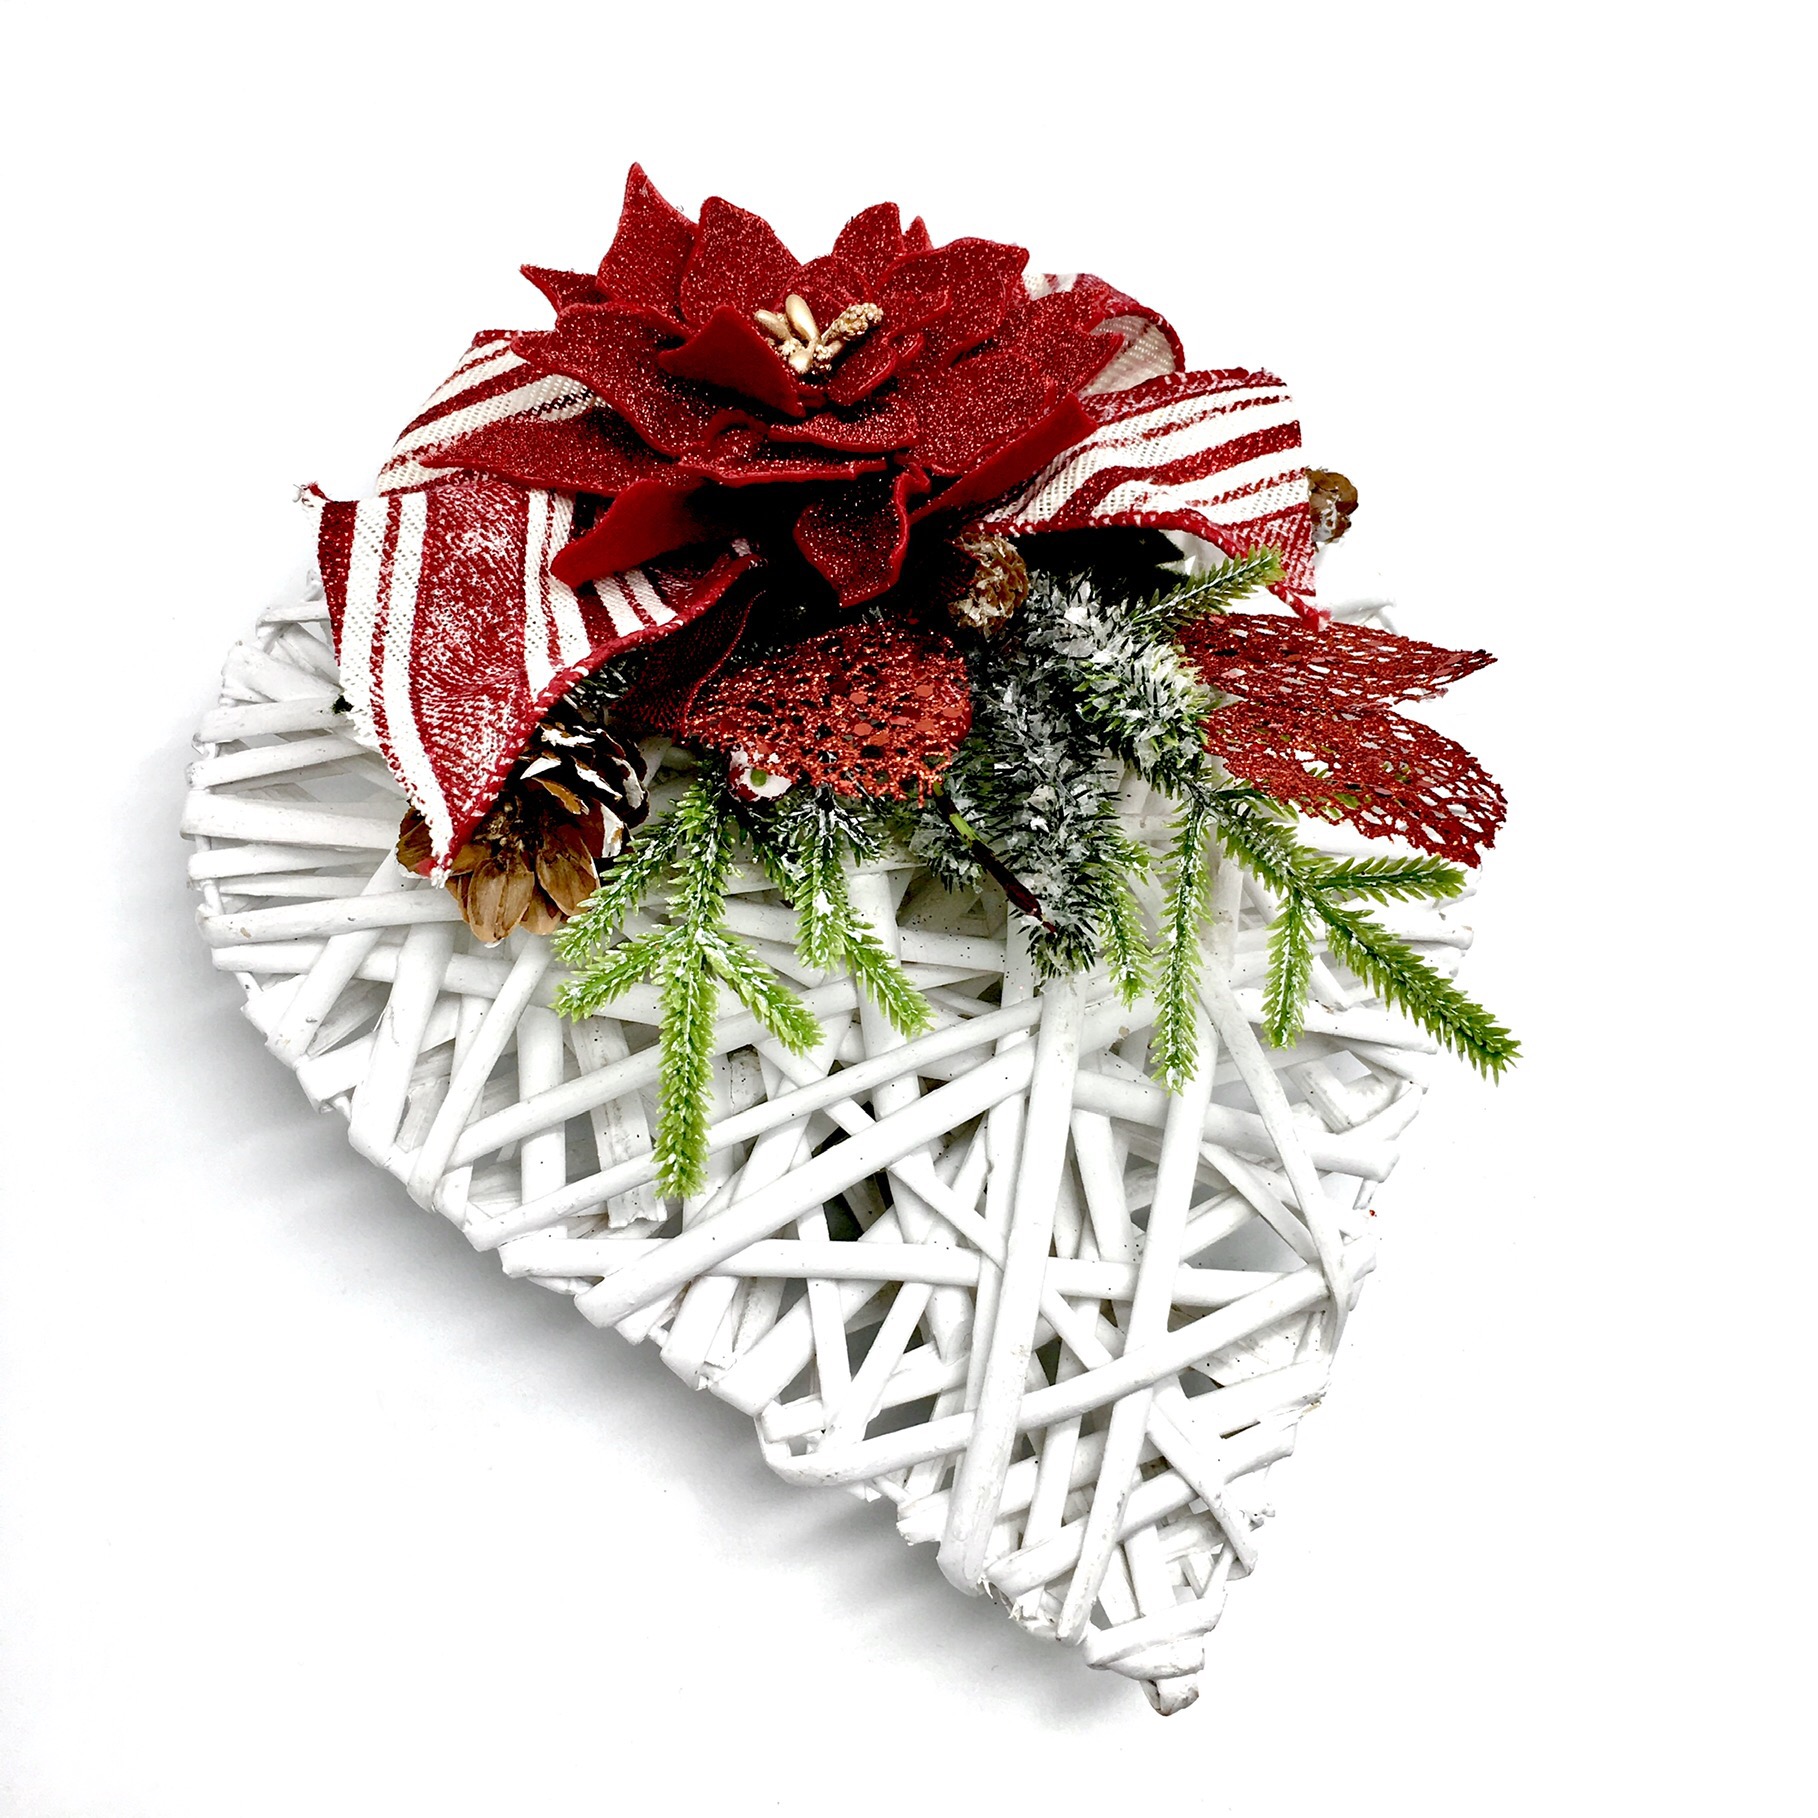 Stella Di Natale In Pannolenci.Cuore Decorato Con Stella Di Natale Linea Merceria Creativa Merceria Vendita Online